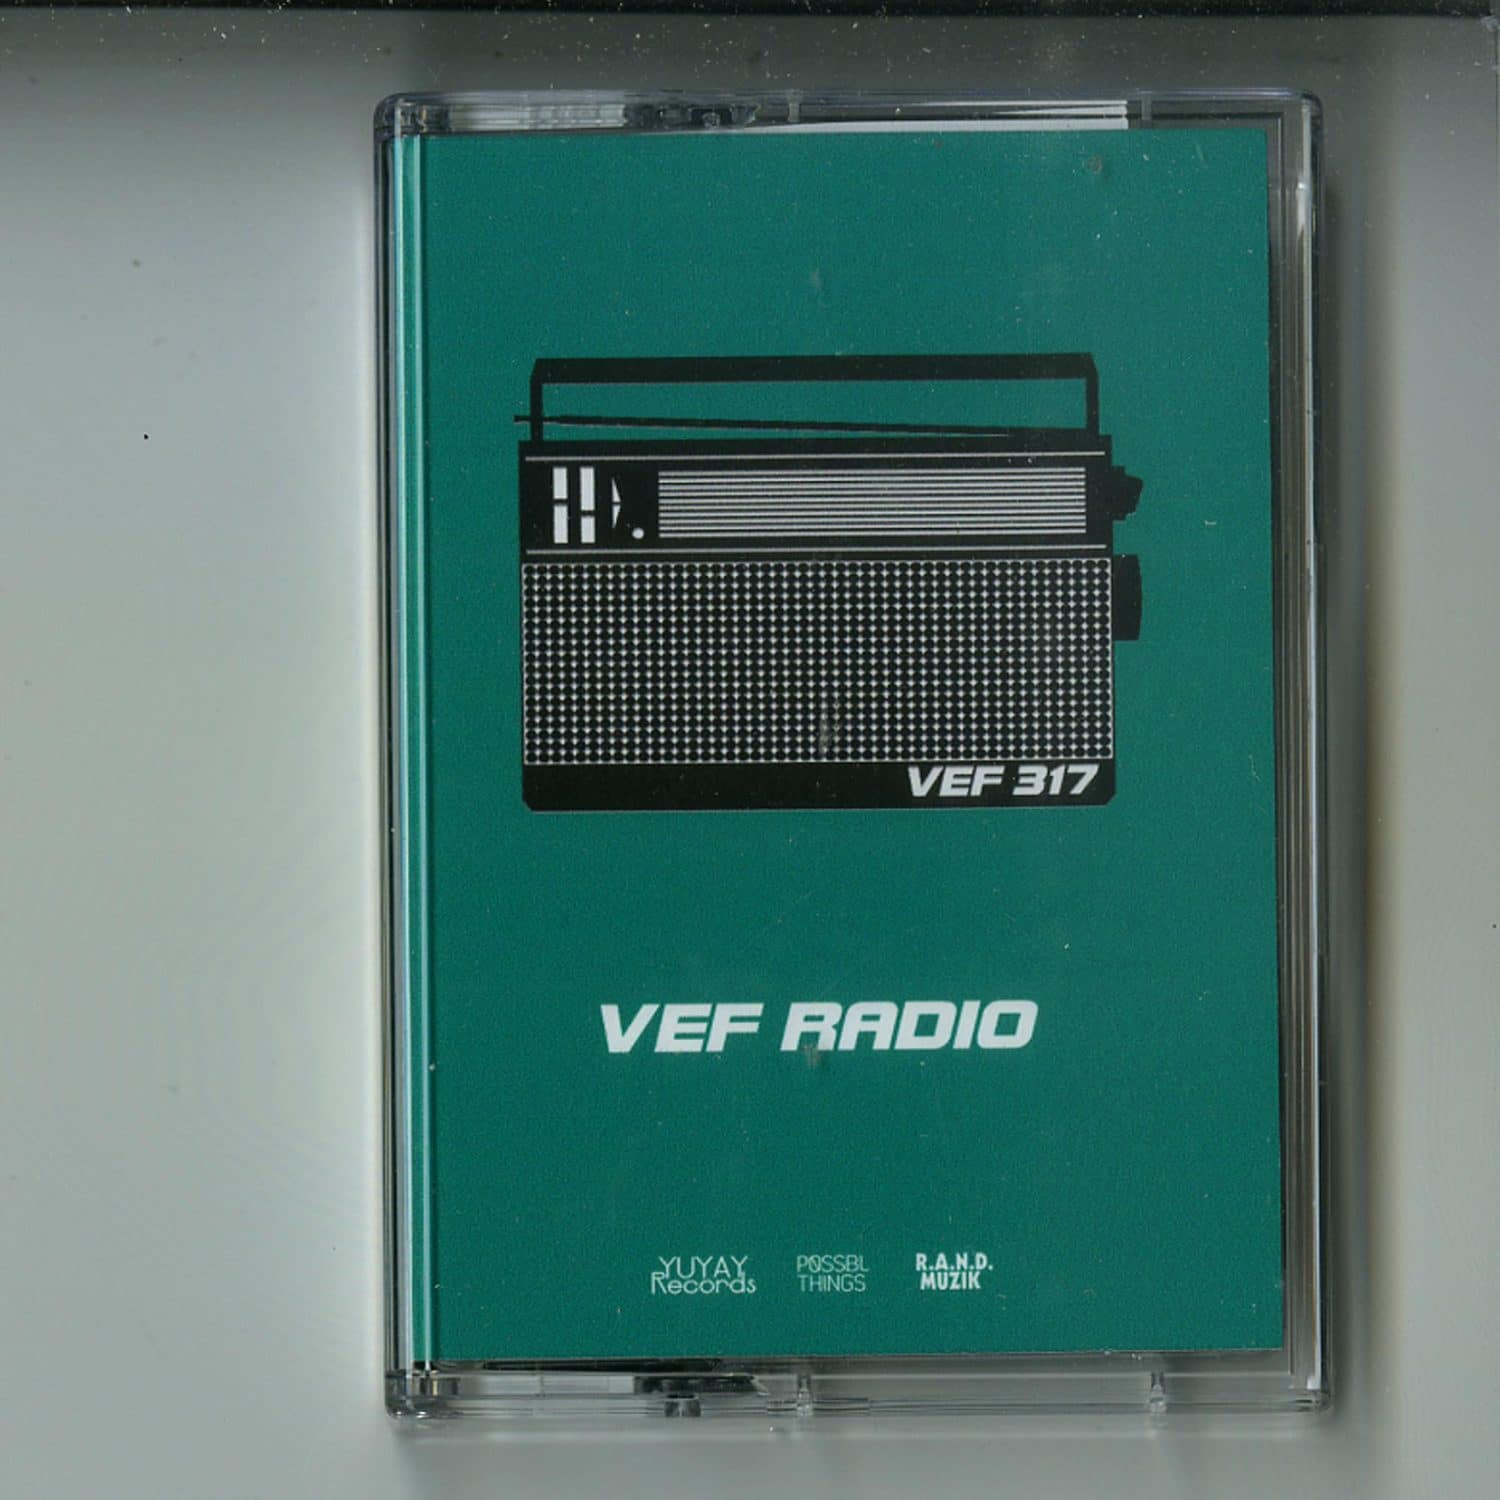 VEF 317 - VEF RADIO 